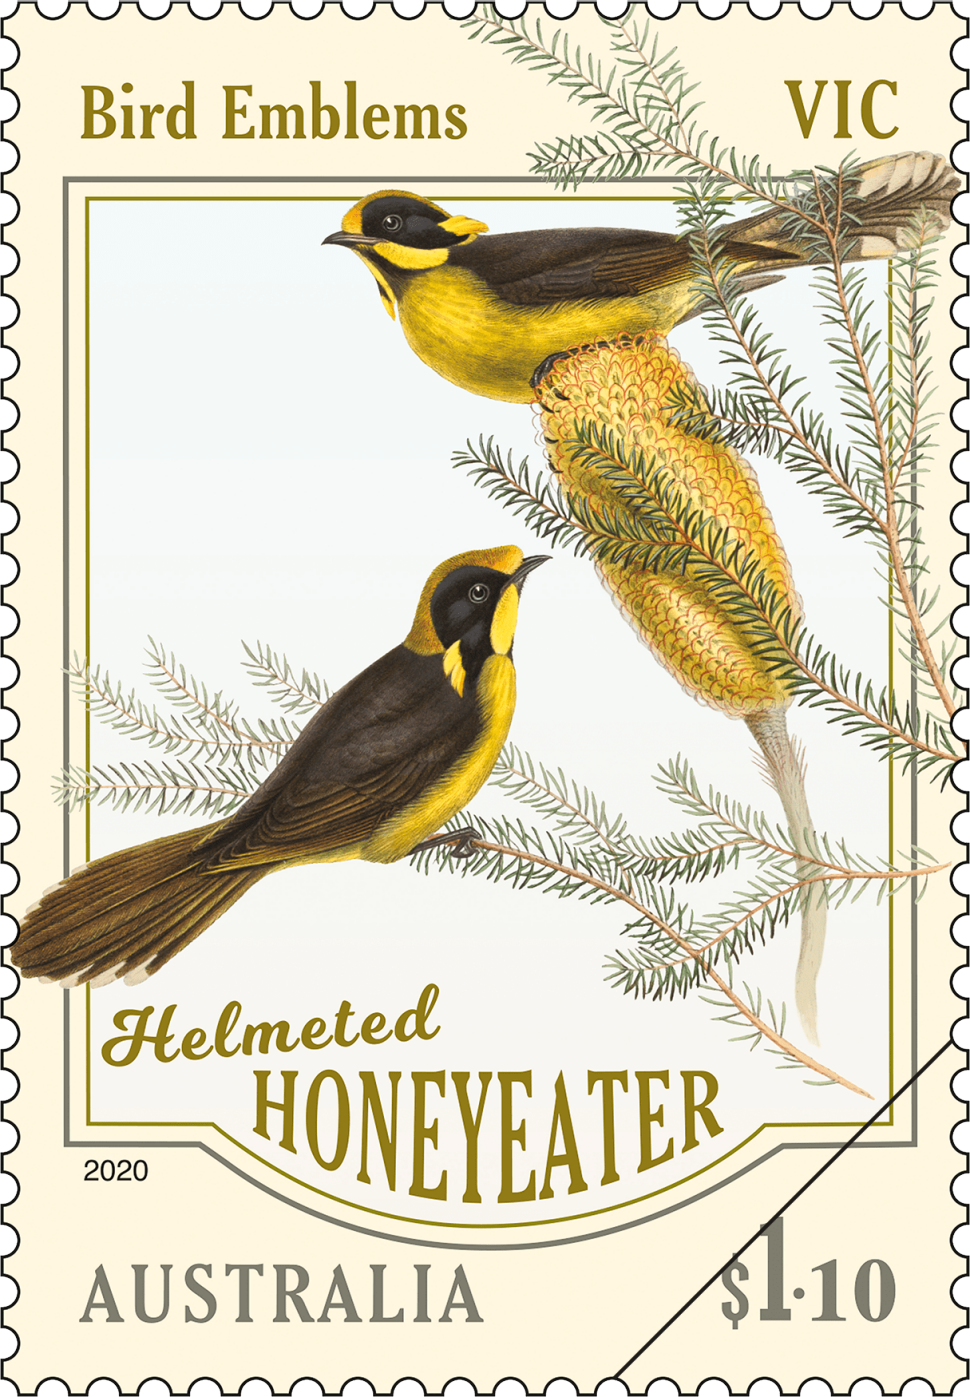 $1.10 - Helmeted Honeyeater